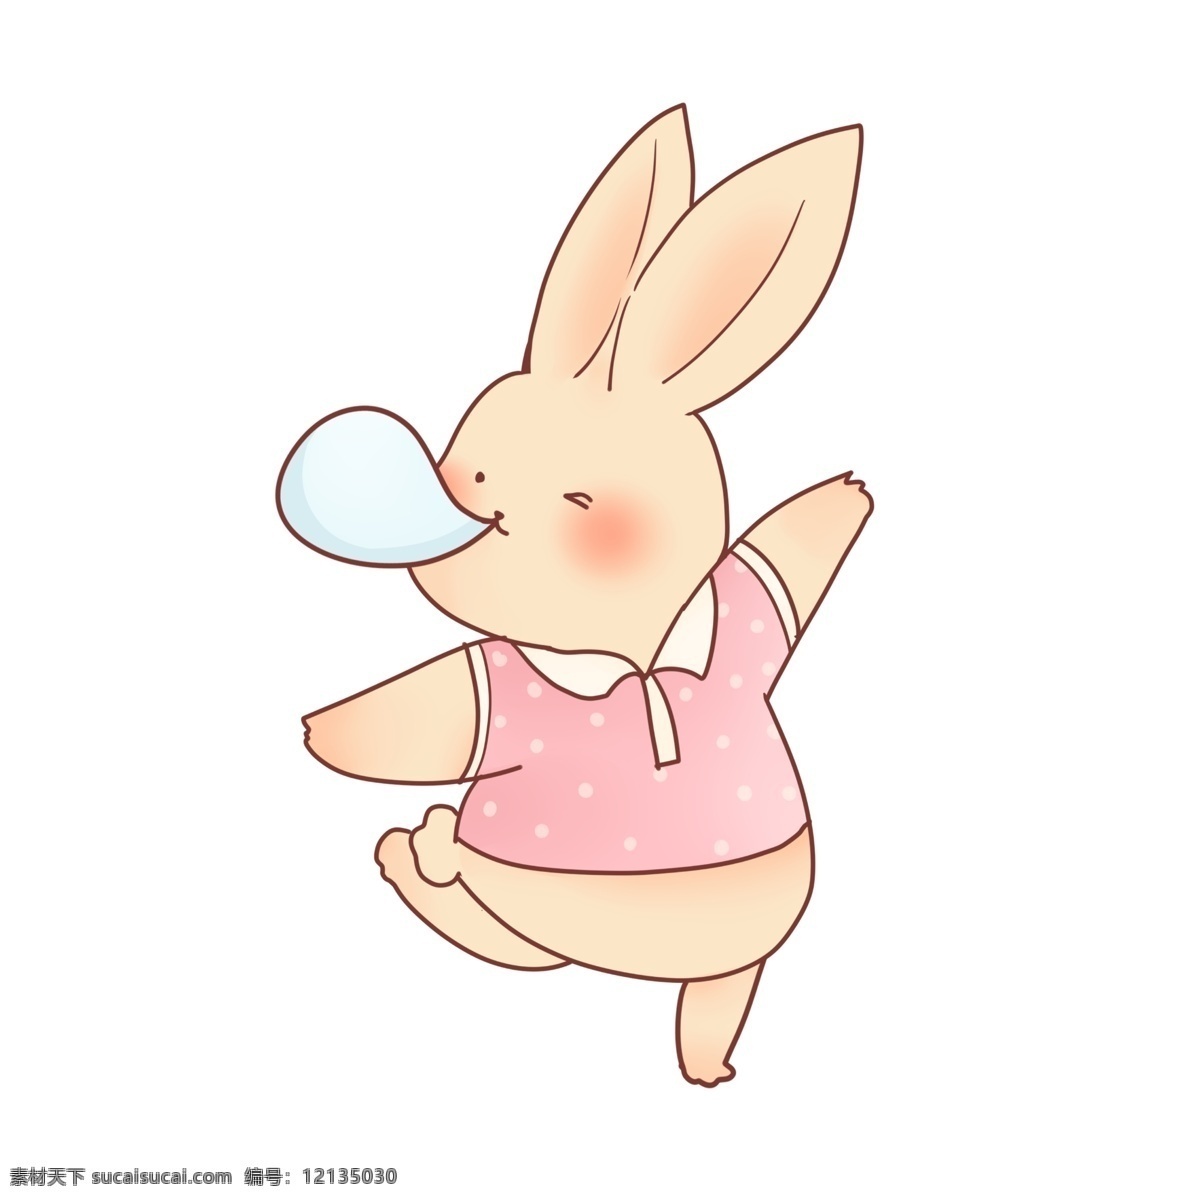 清新 可爱 小 兔子 吹 泡泡 小兔子 动物 拟人化 口香糖 波点 服装 粉色 插画风 拟人